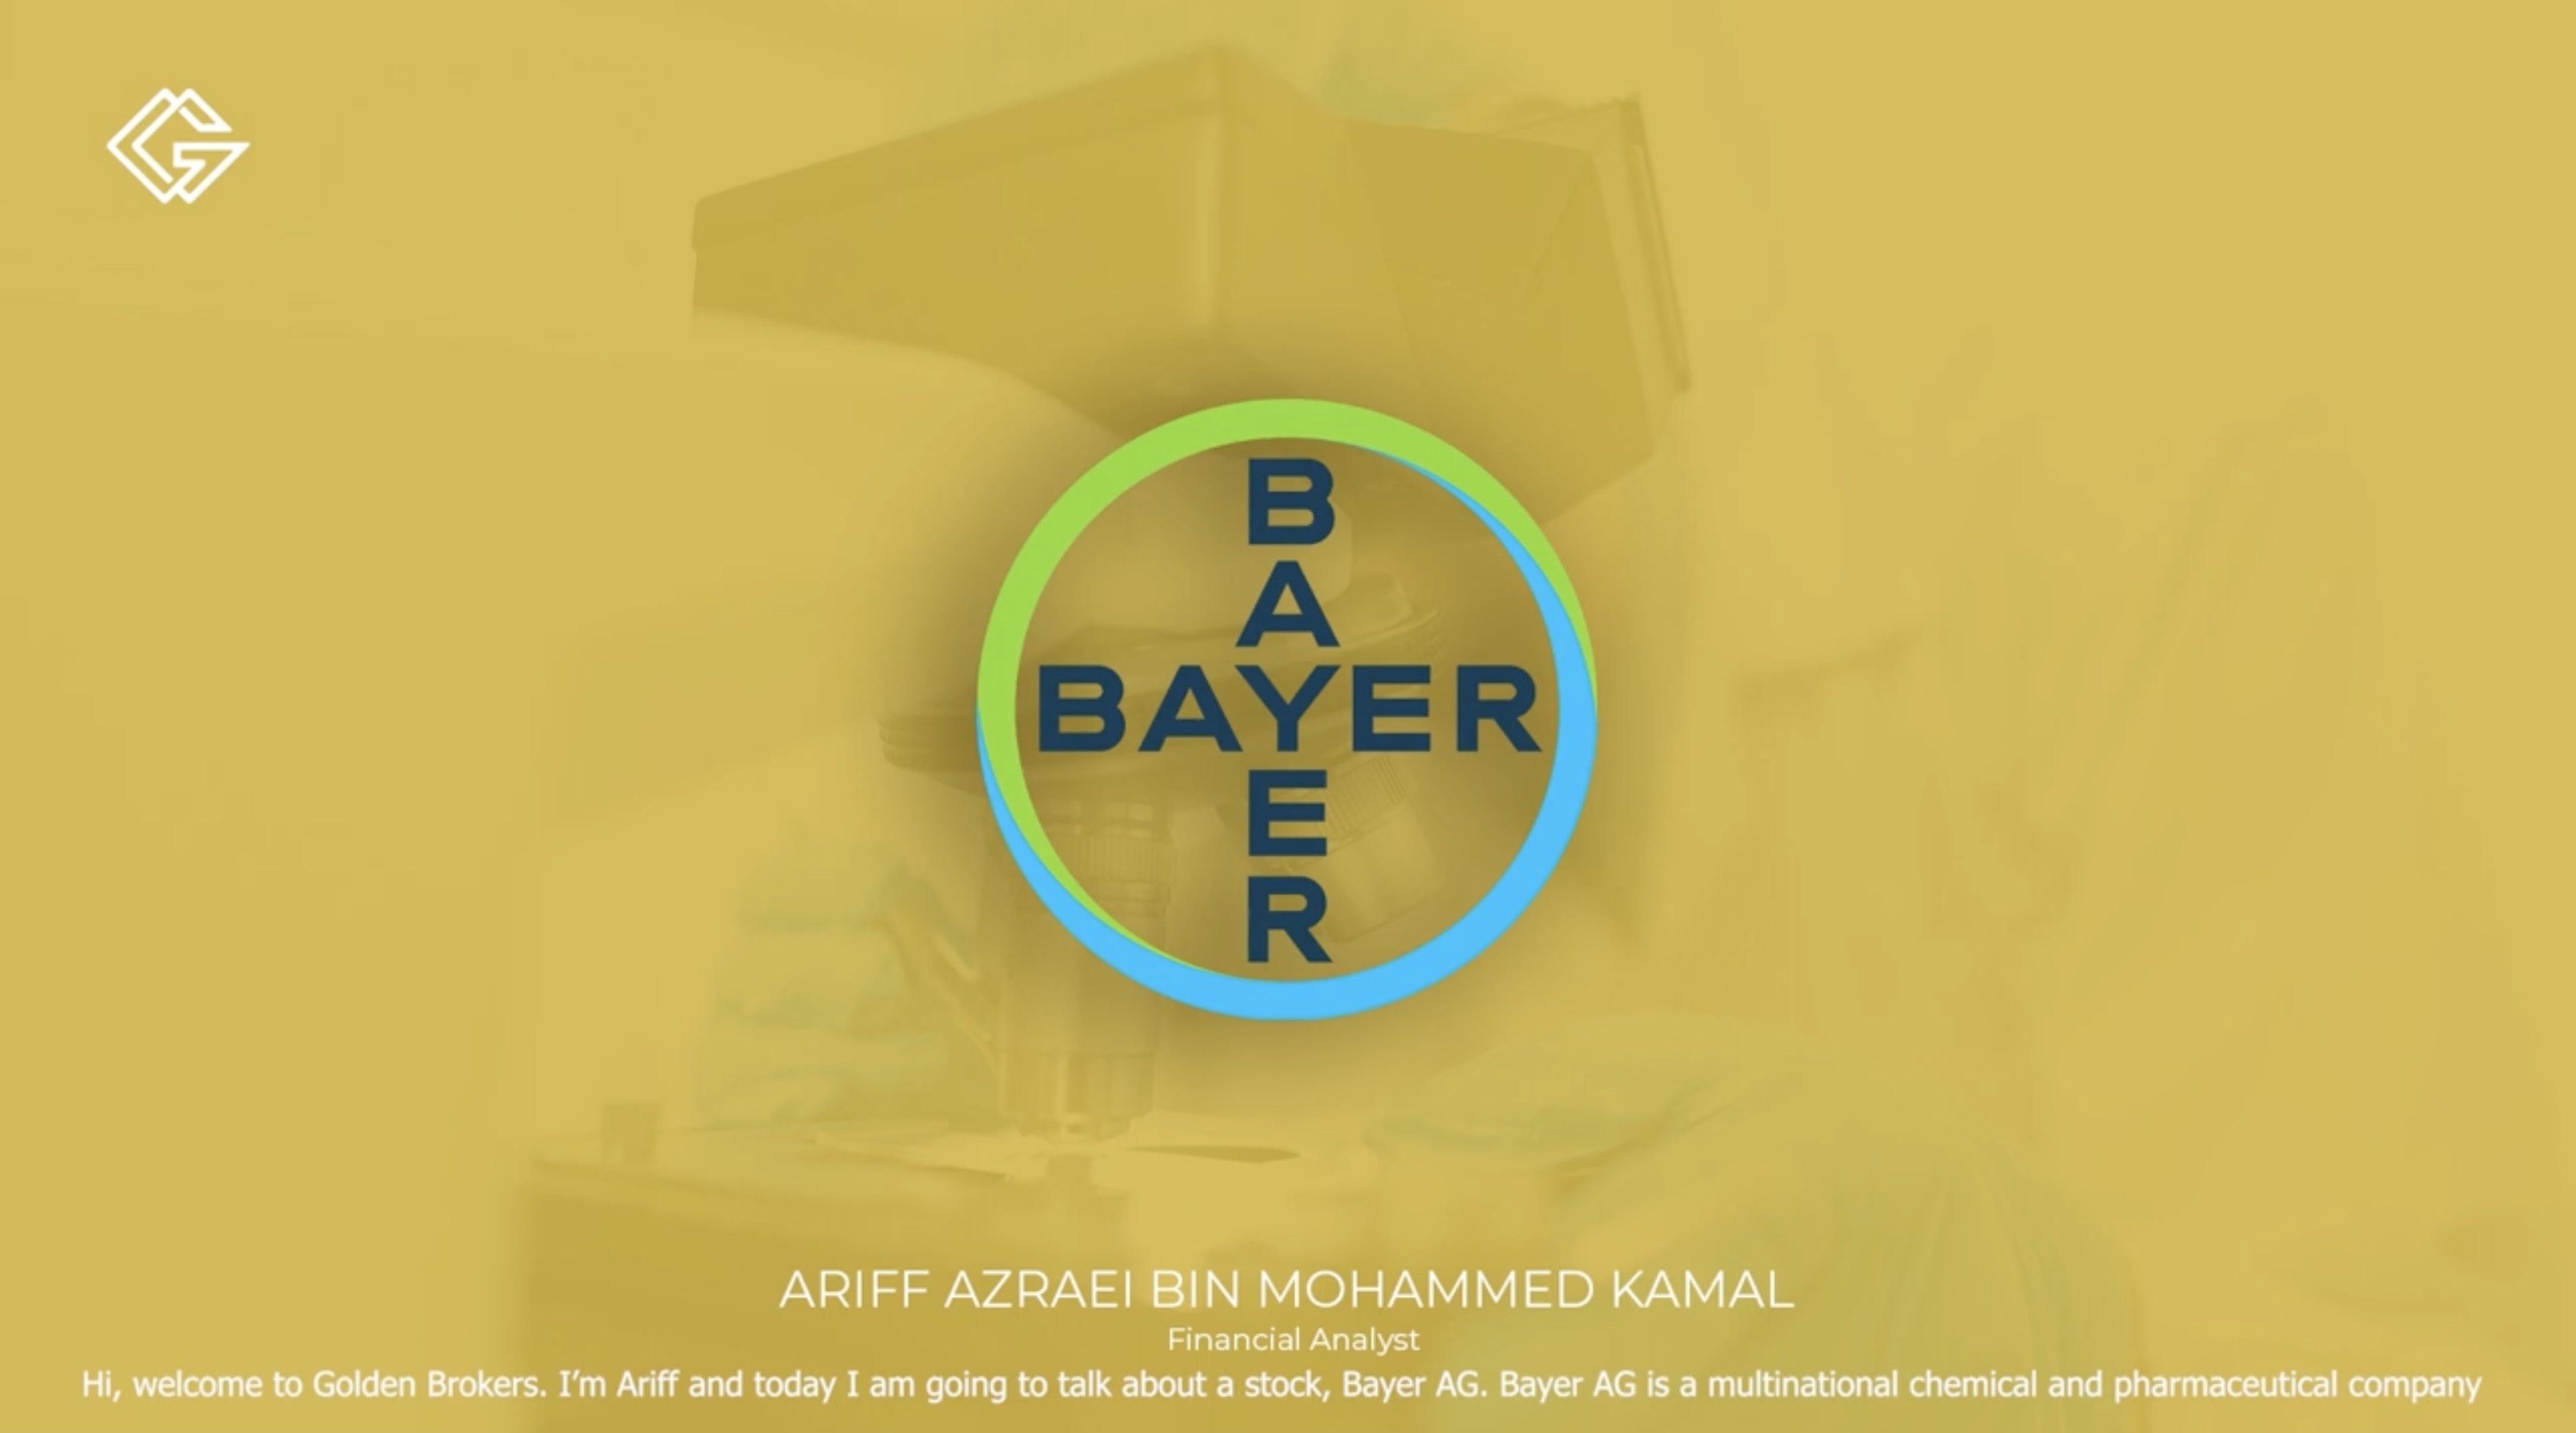 Golden Brokers | Bayer | Ariff Azrael Bin Mohammed Kamal